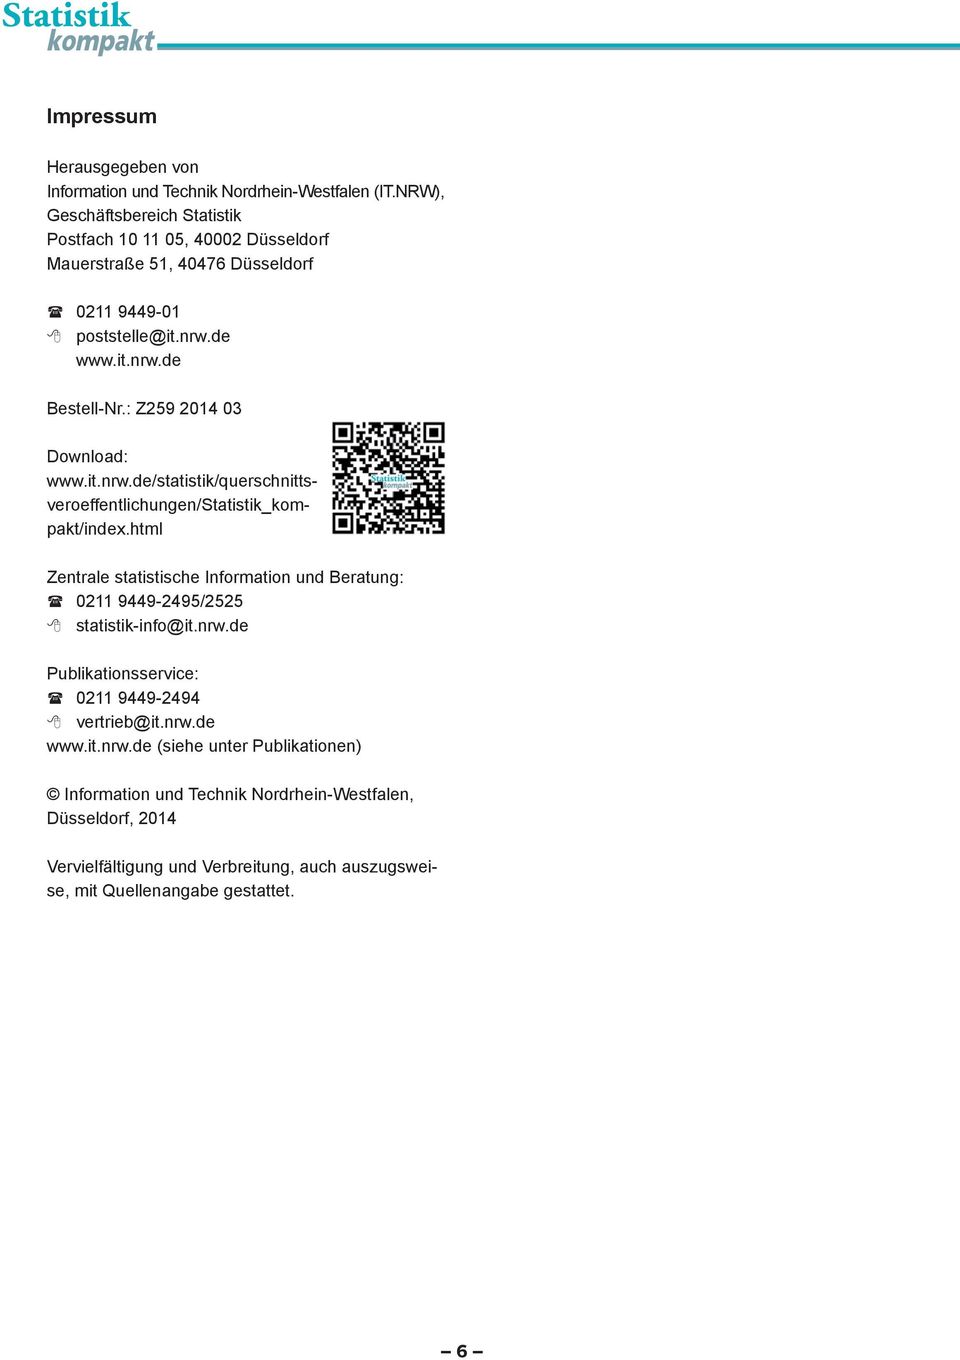 : Z259 2014 03 Download: www.it.nrw.de/statistik/querschnittsveroeffentlichungen/statistik_kompakt/index.